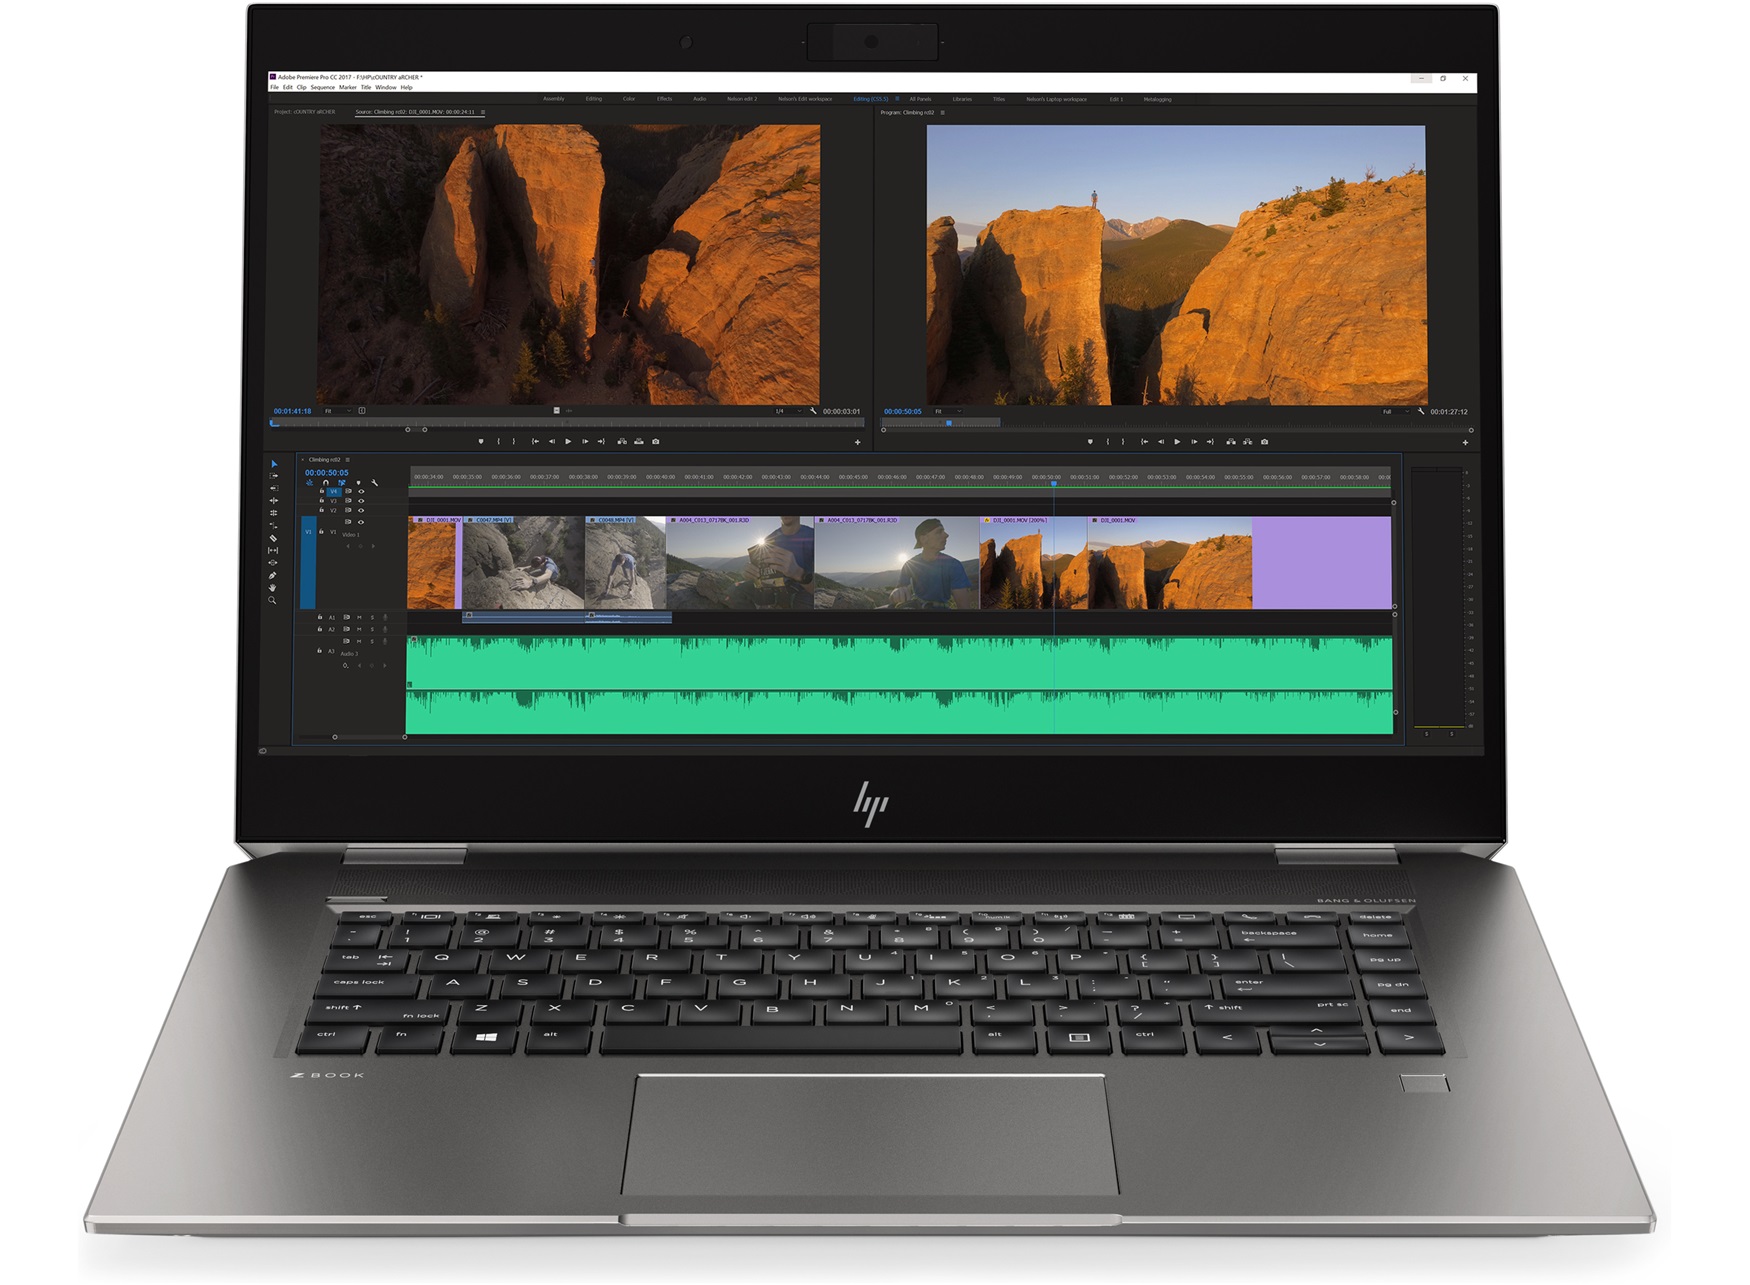 Máy HP zBook Studio x360 G5 có tốc độ chạy chương trình nhanh chóng